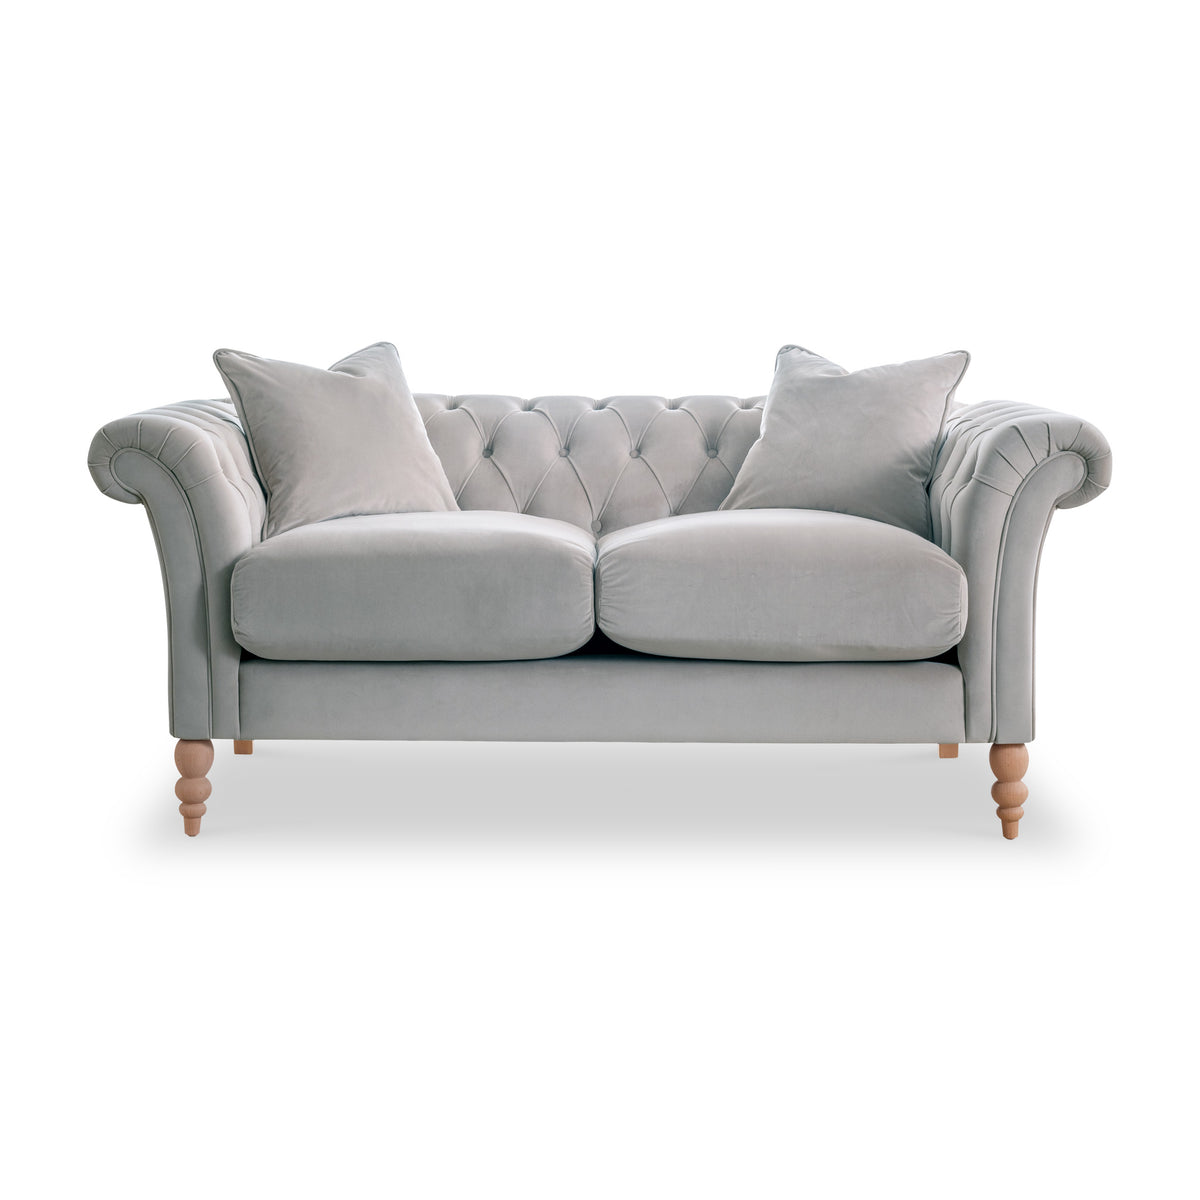 Balmoral Chalk Velvet Chesterfield 2 Seater Sofa from Roseland Furniture